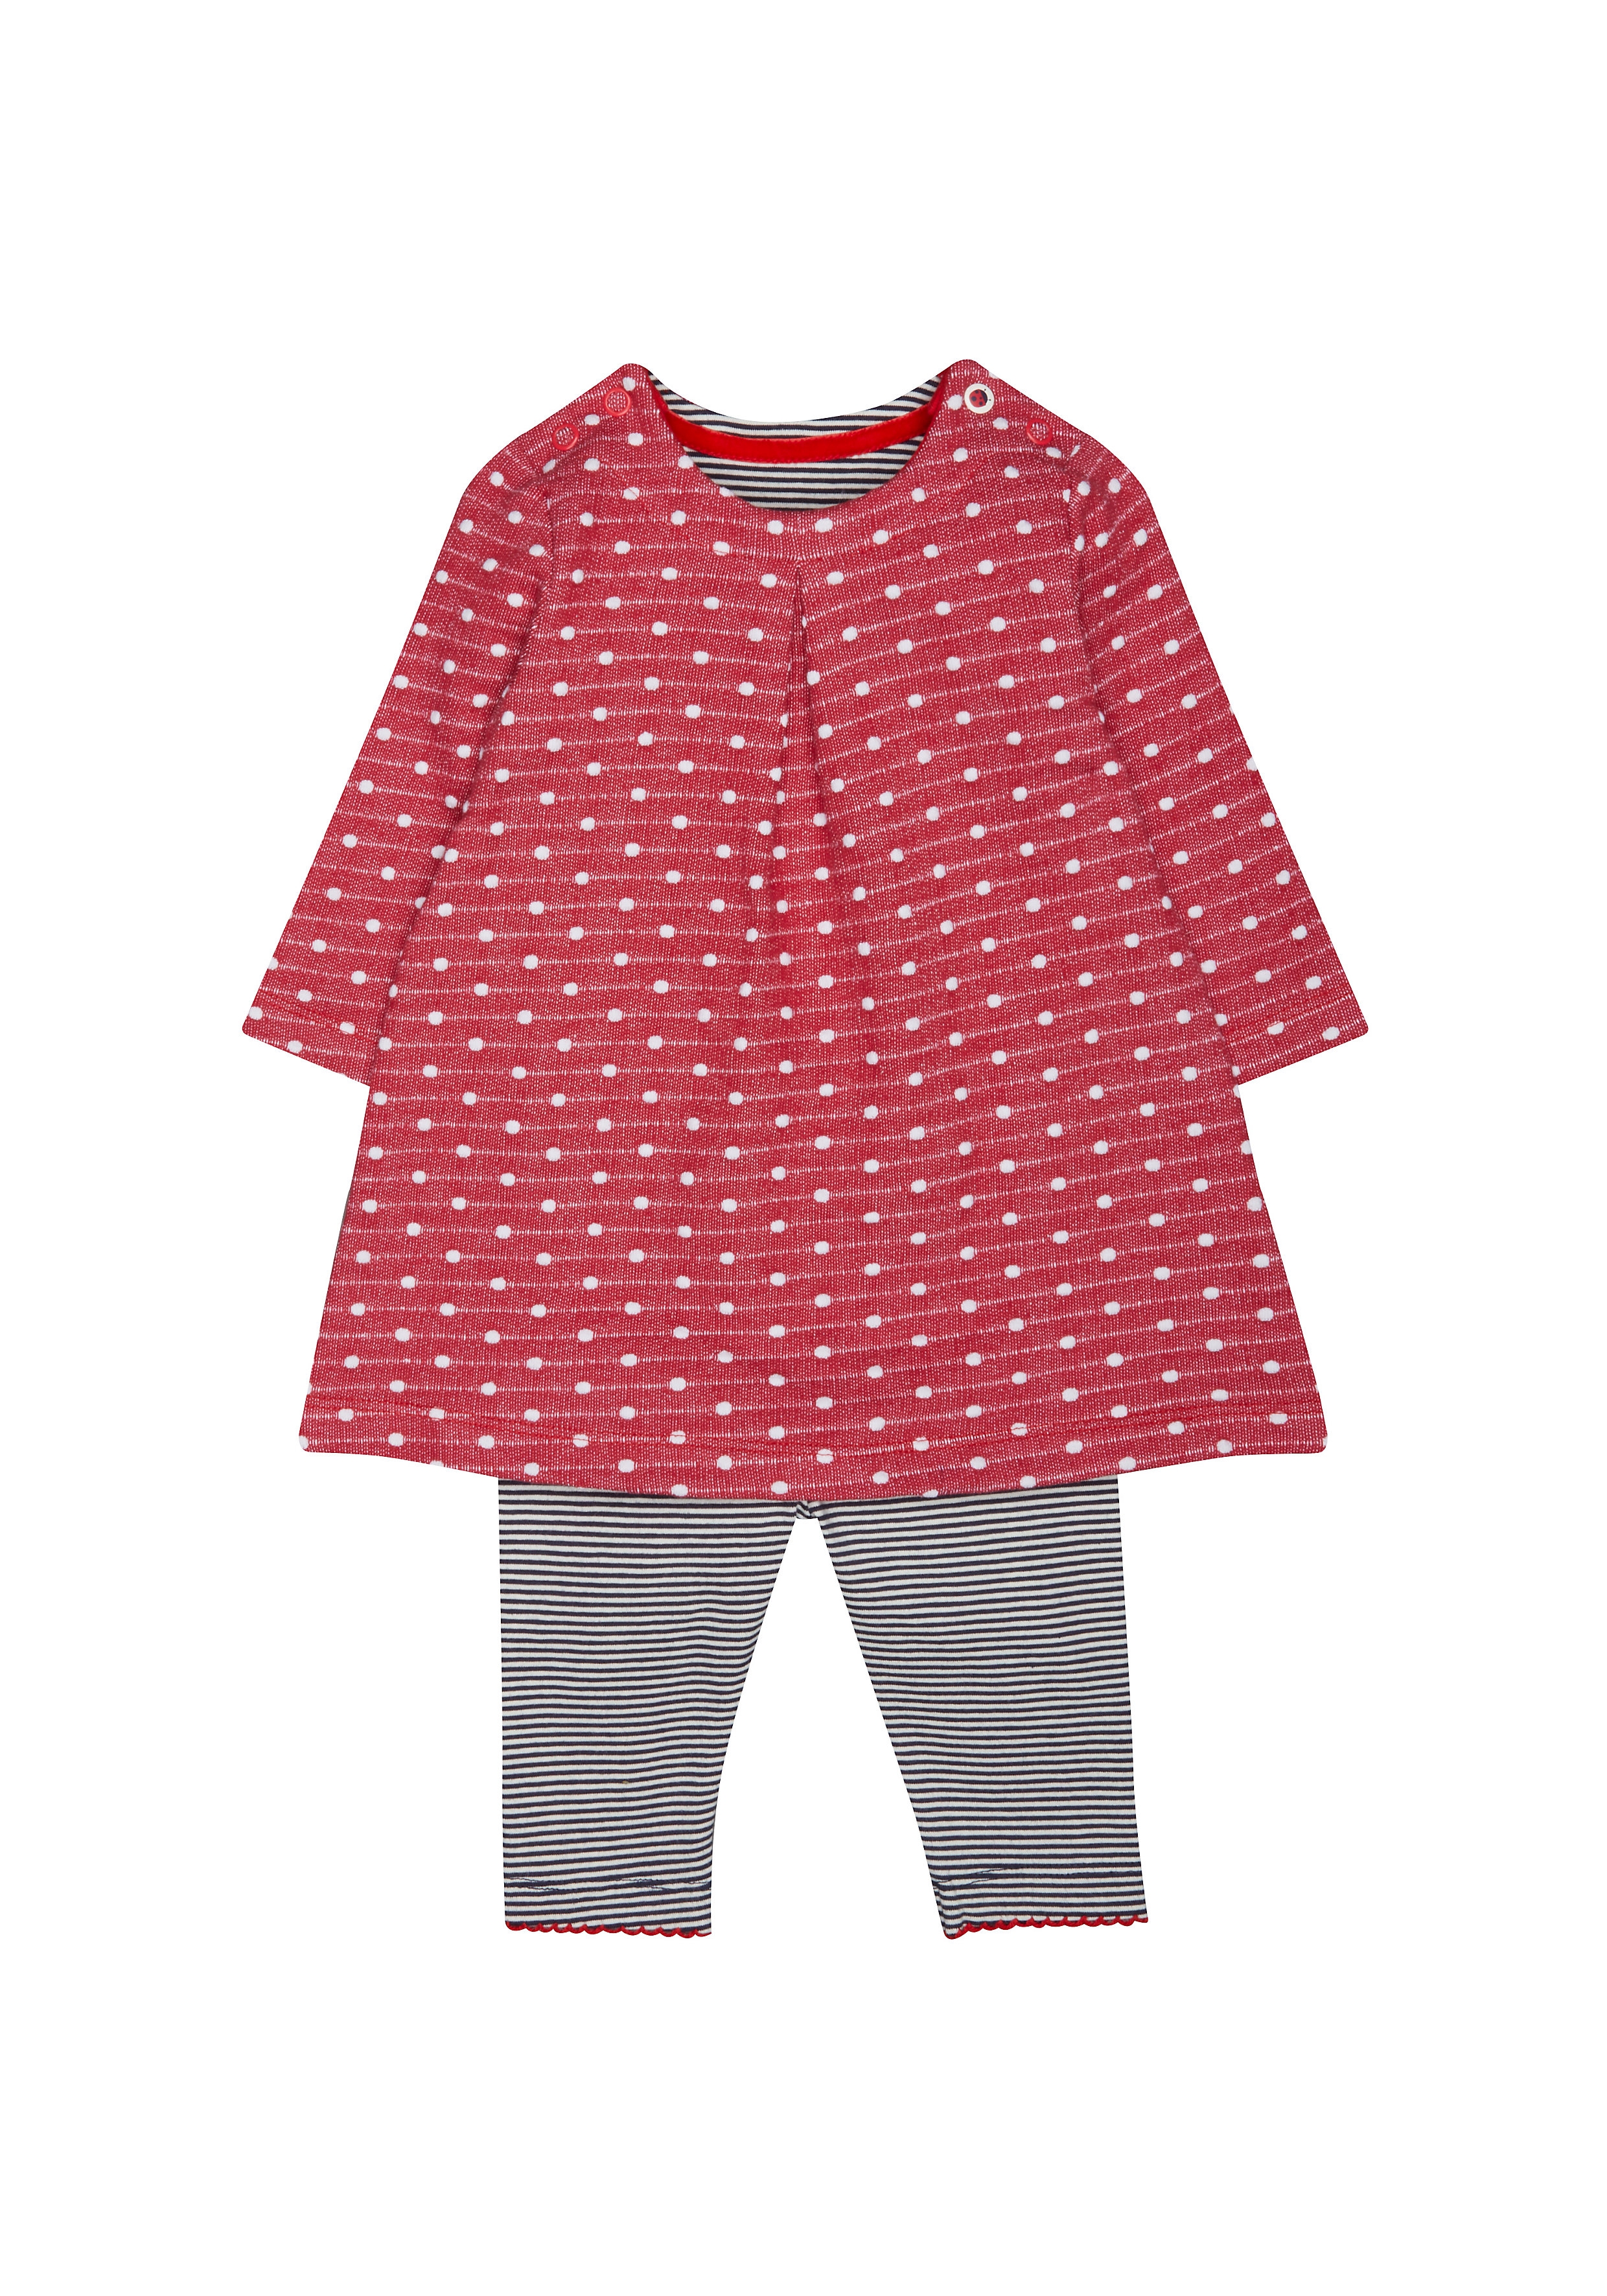 Mothercare | Girls Full Sleeves Dress And Legging Set Polka Dot Print - Red 0